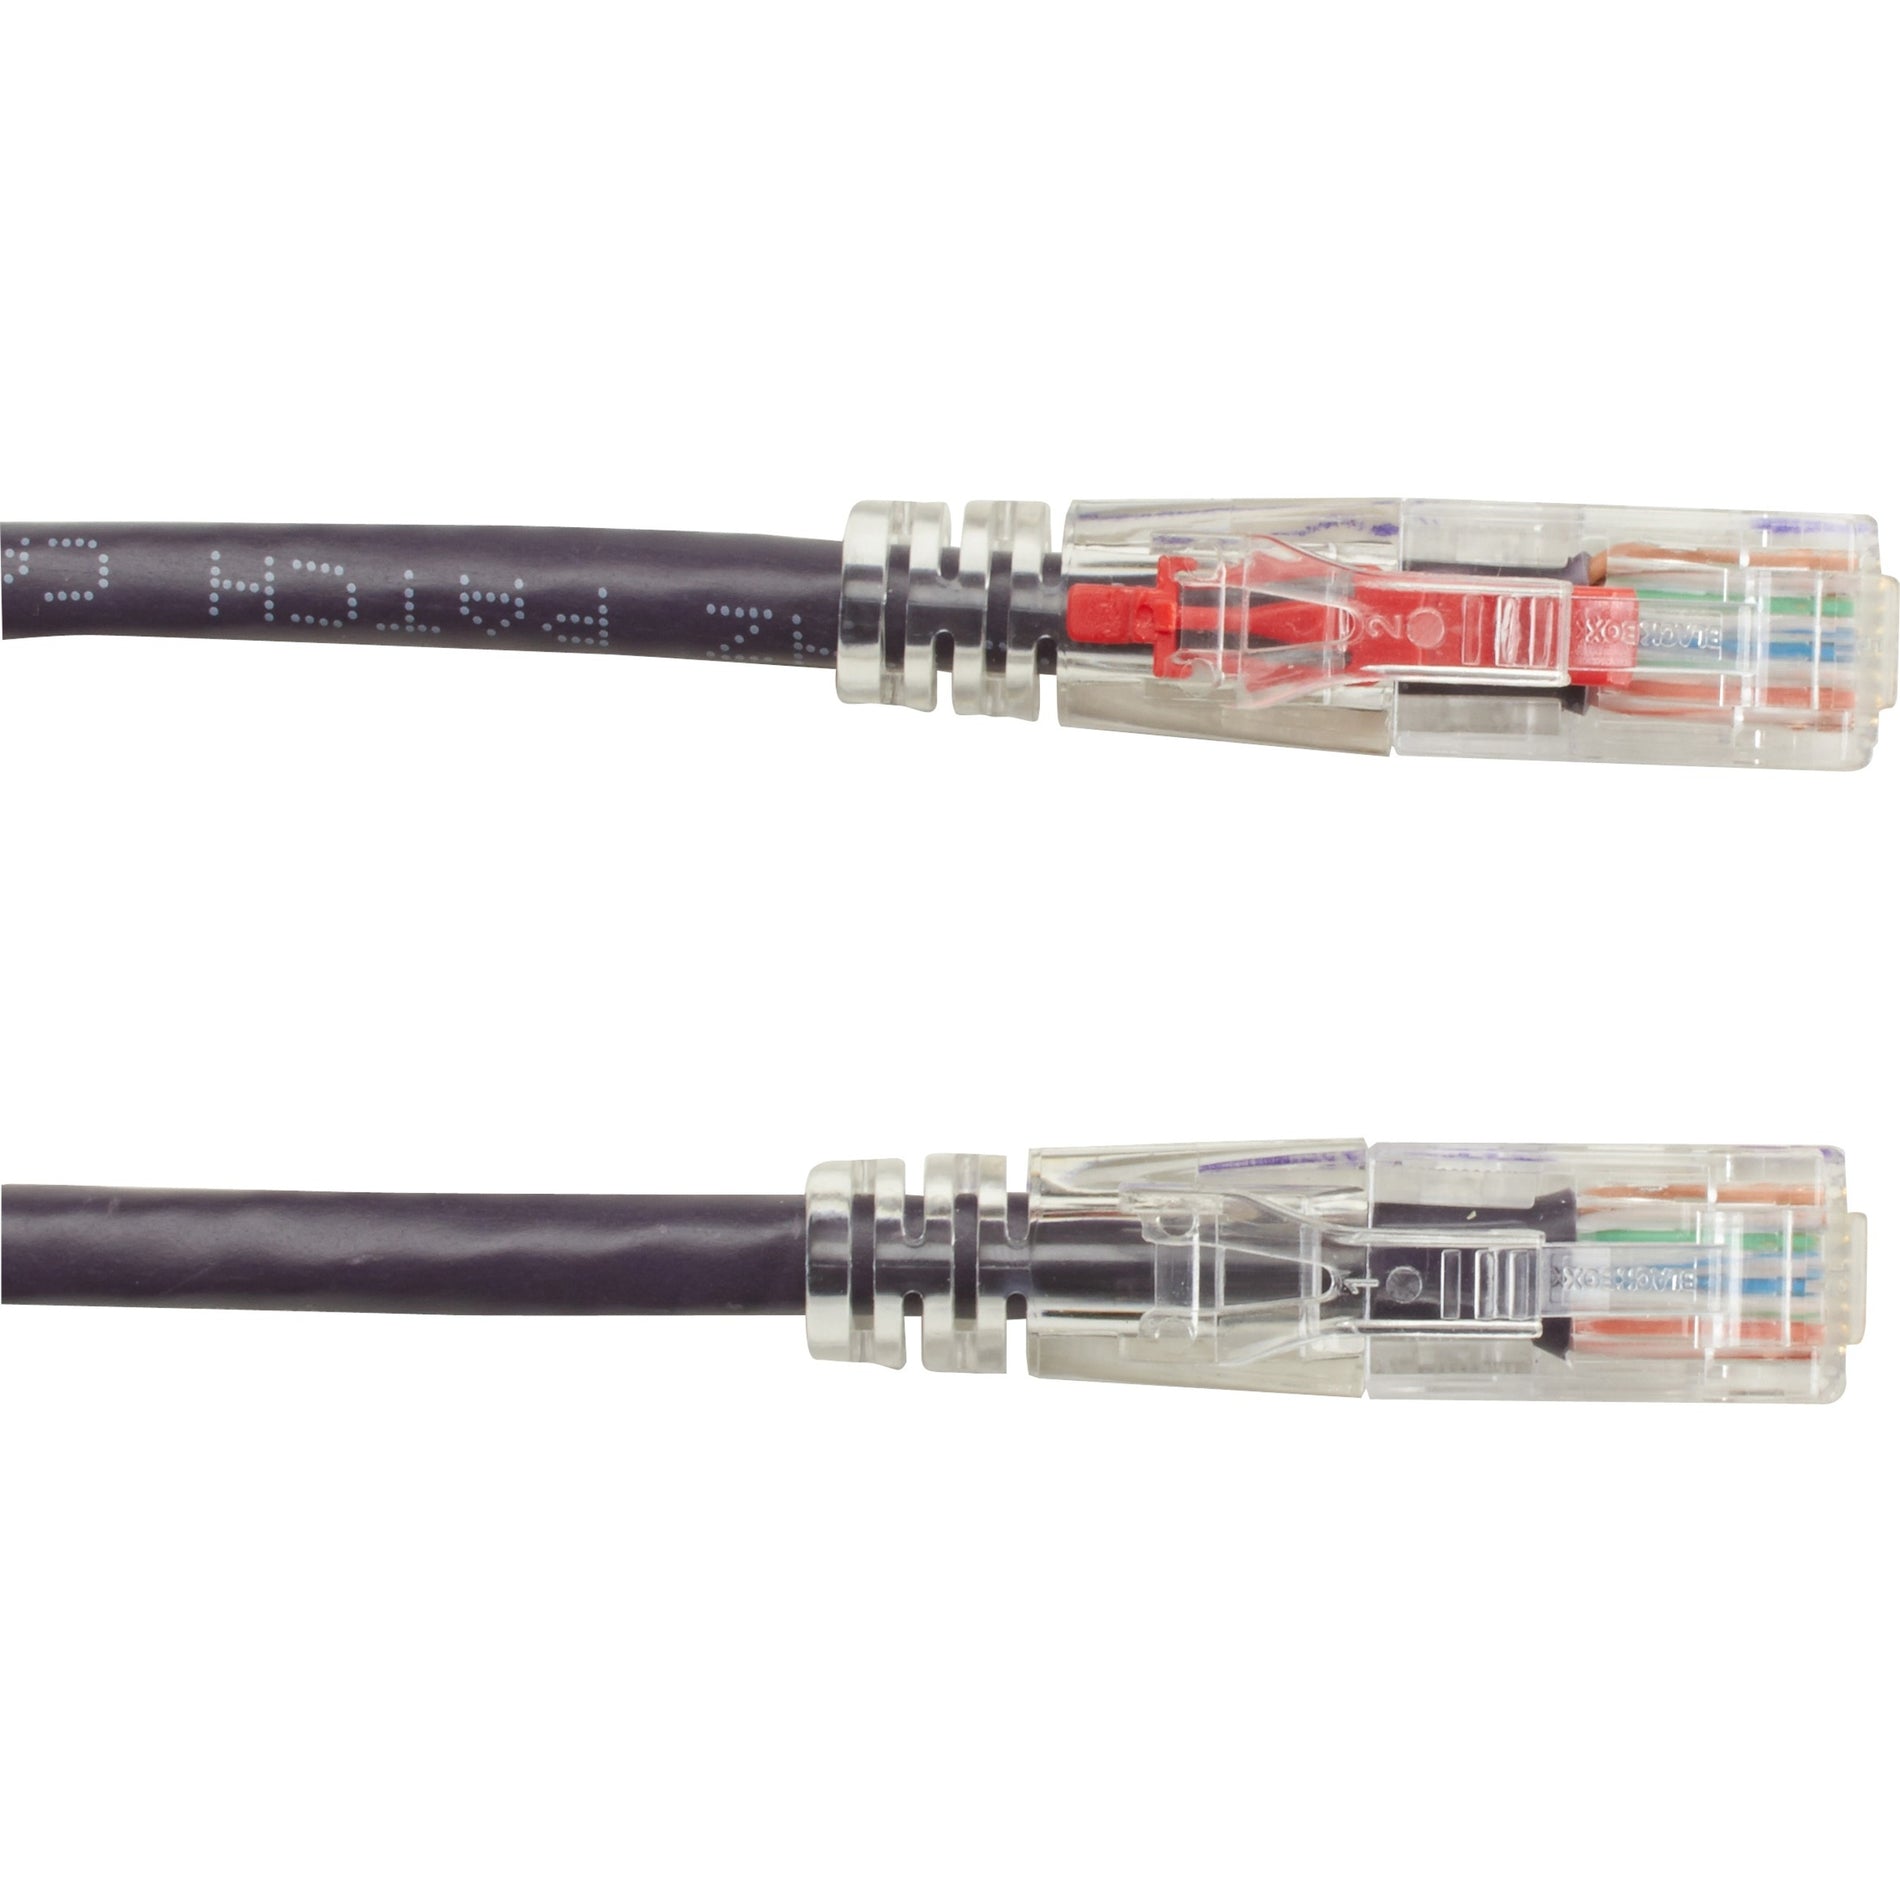 Black Box C6PC70-VT-03 GigaTrue 3 Cat.6 UTP Patch Network Cable, 3 ft, Purple, 1 Gbit/s